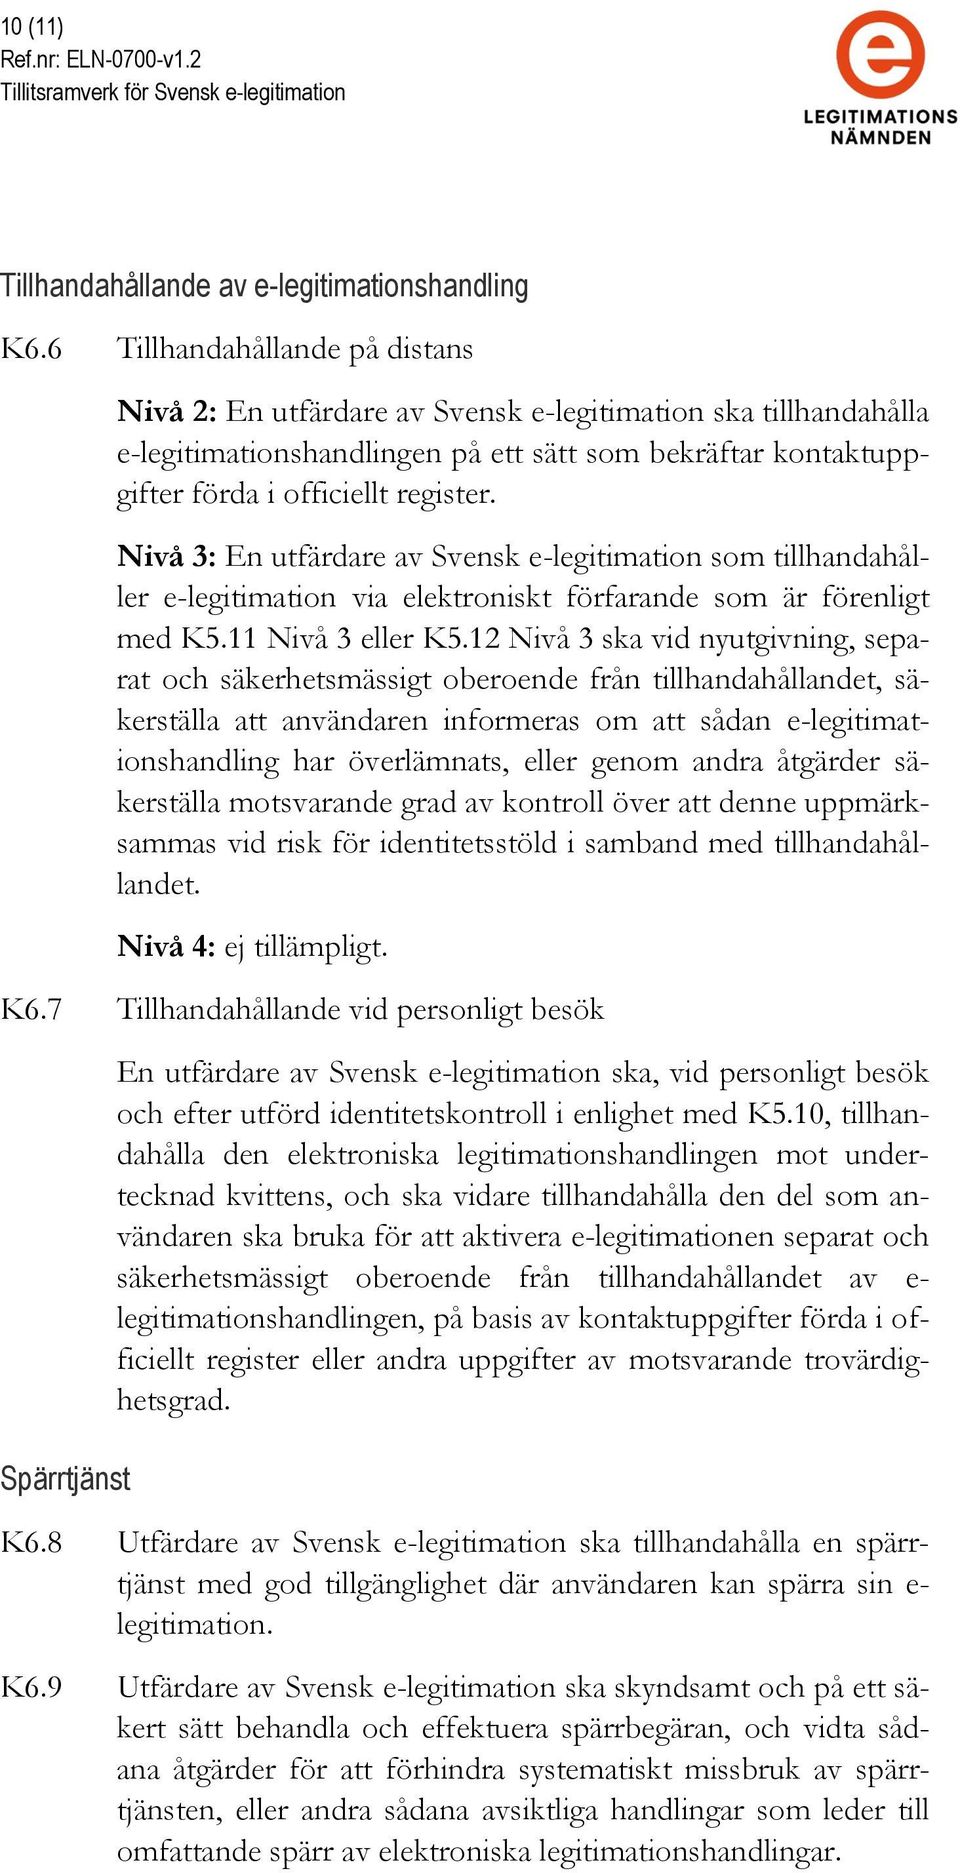 Nivå 3: En utfärdare av Svensk e-legitimation som tillhandahåller e-legitimation via elektroniskt förfarande som är förenligt med K5.11 Nivå 3 eller K5.